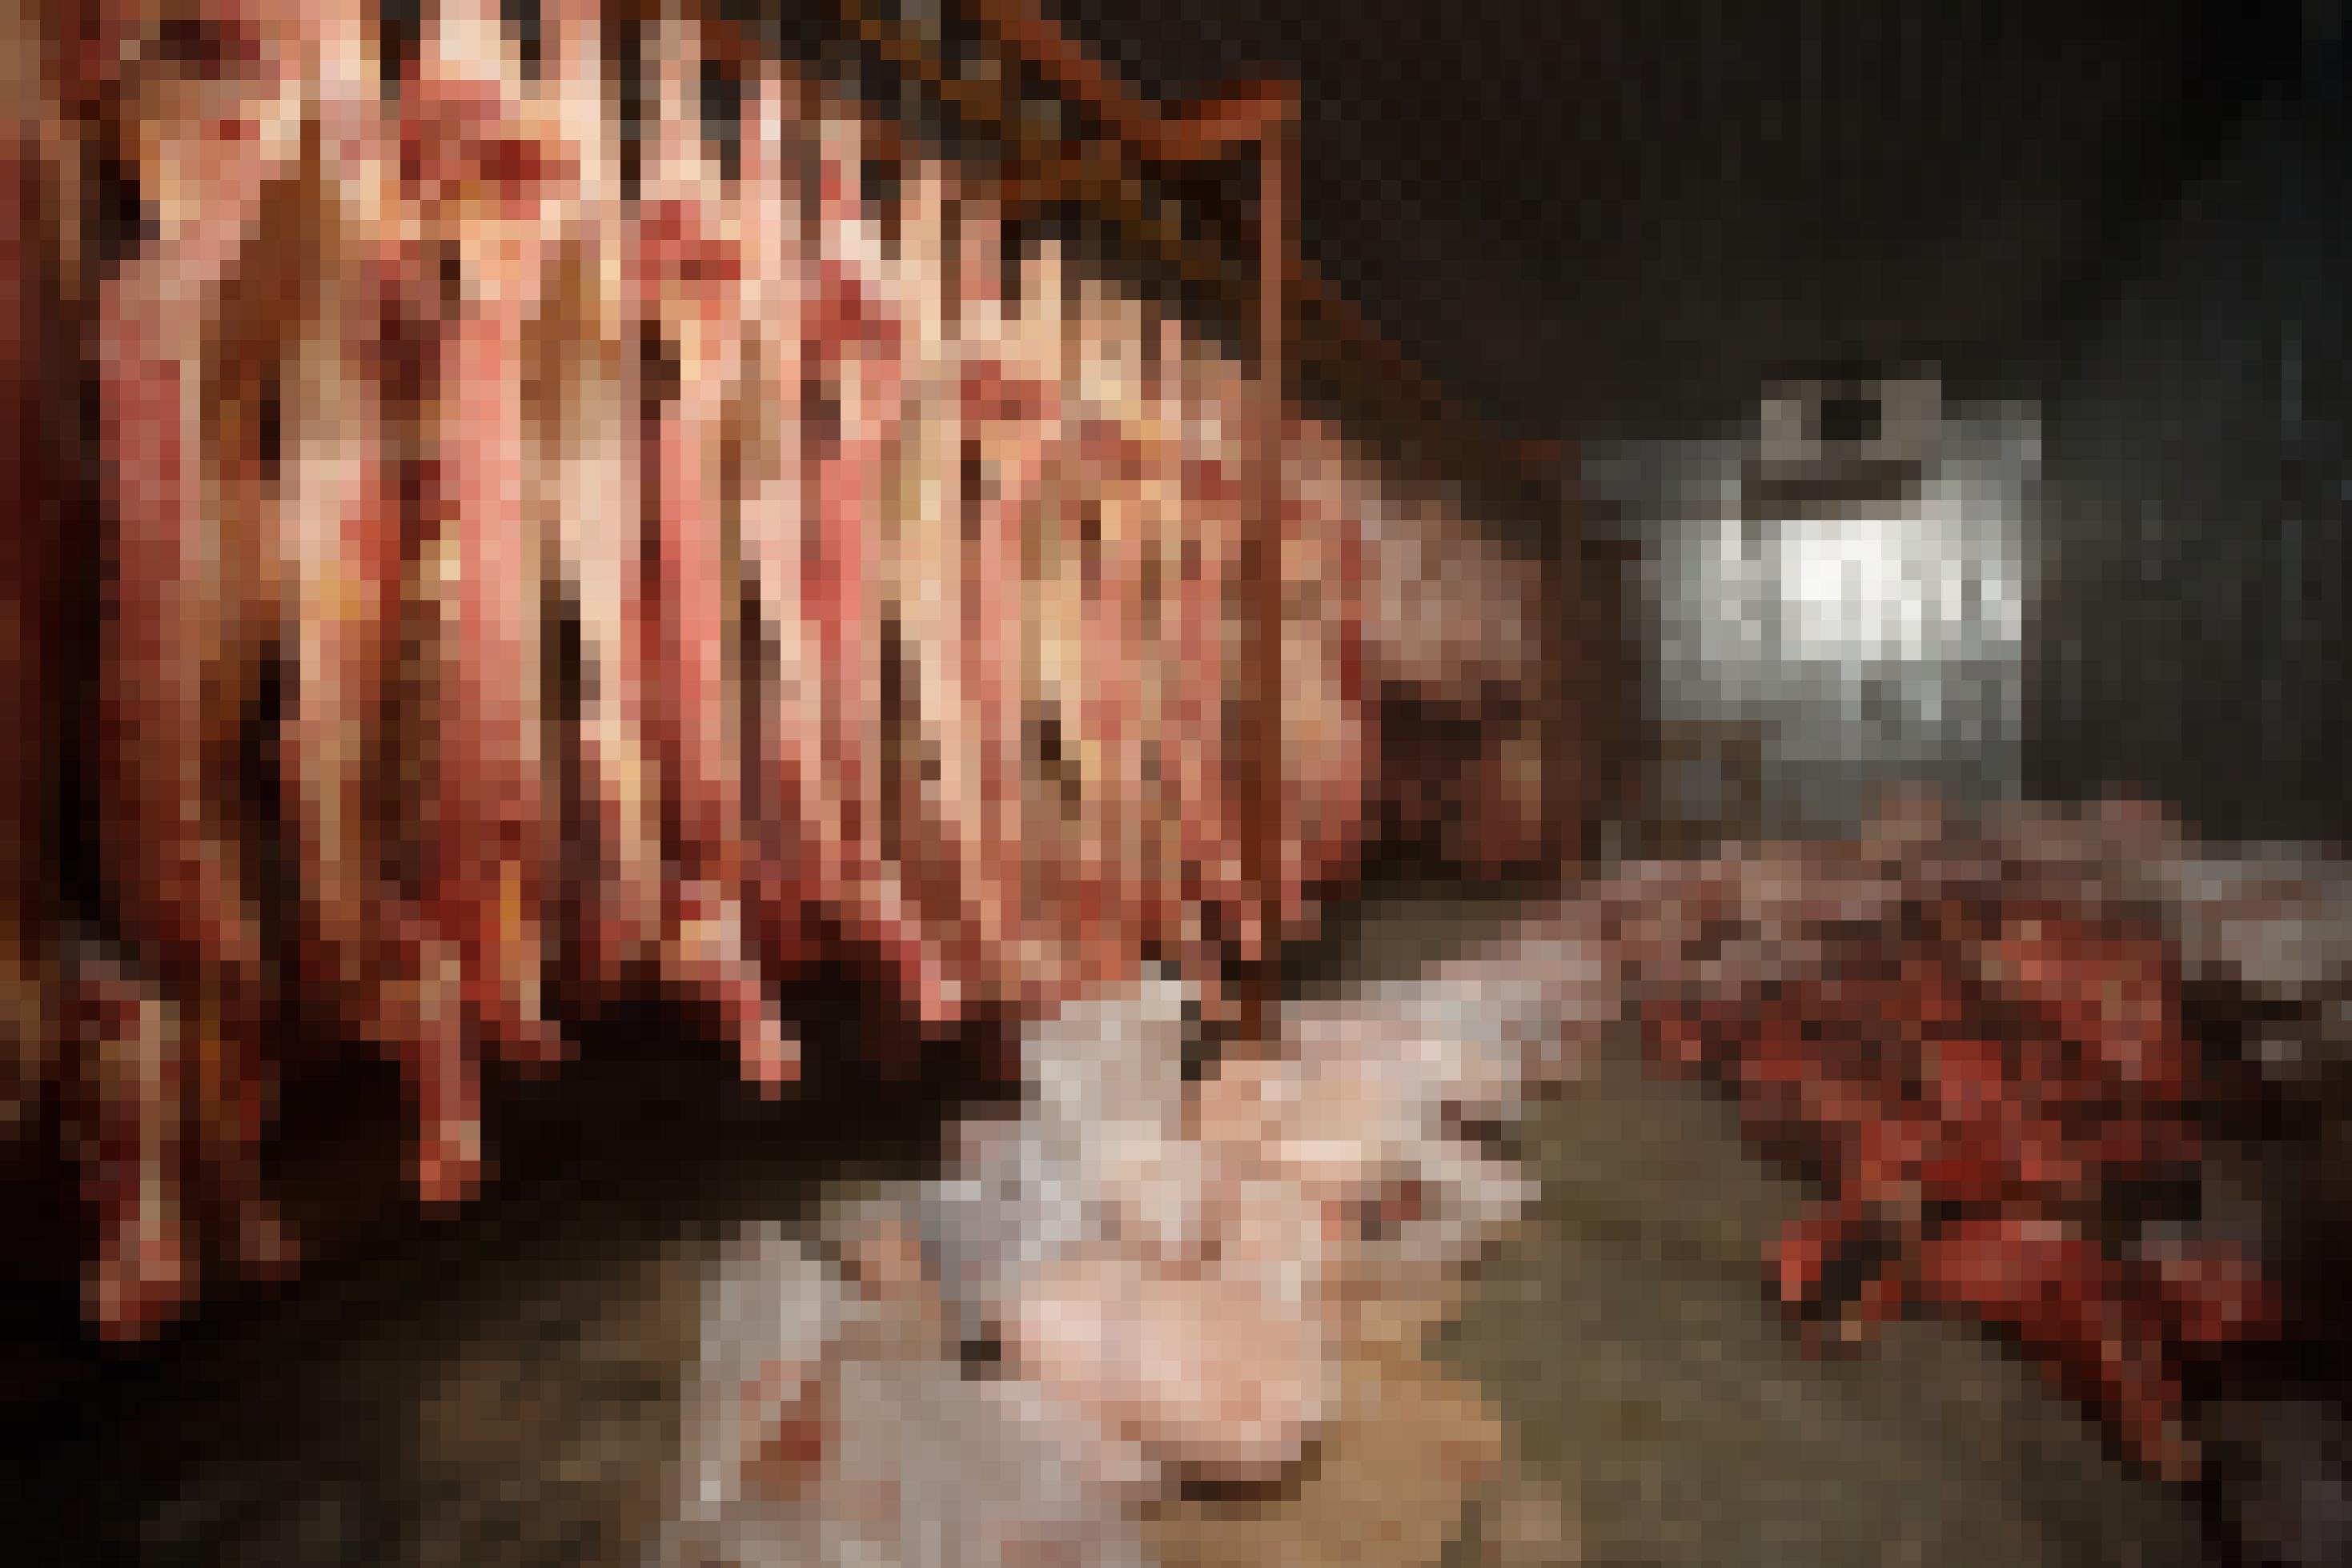 Eine Totale zeigt ein Schlachthaus. Links hängen Rinderhälften, am Boden liegen weitere Fleischteile.